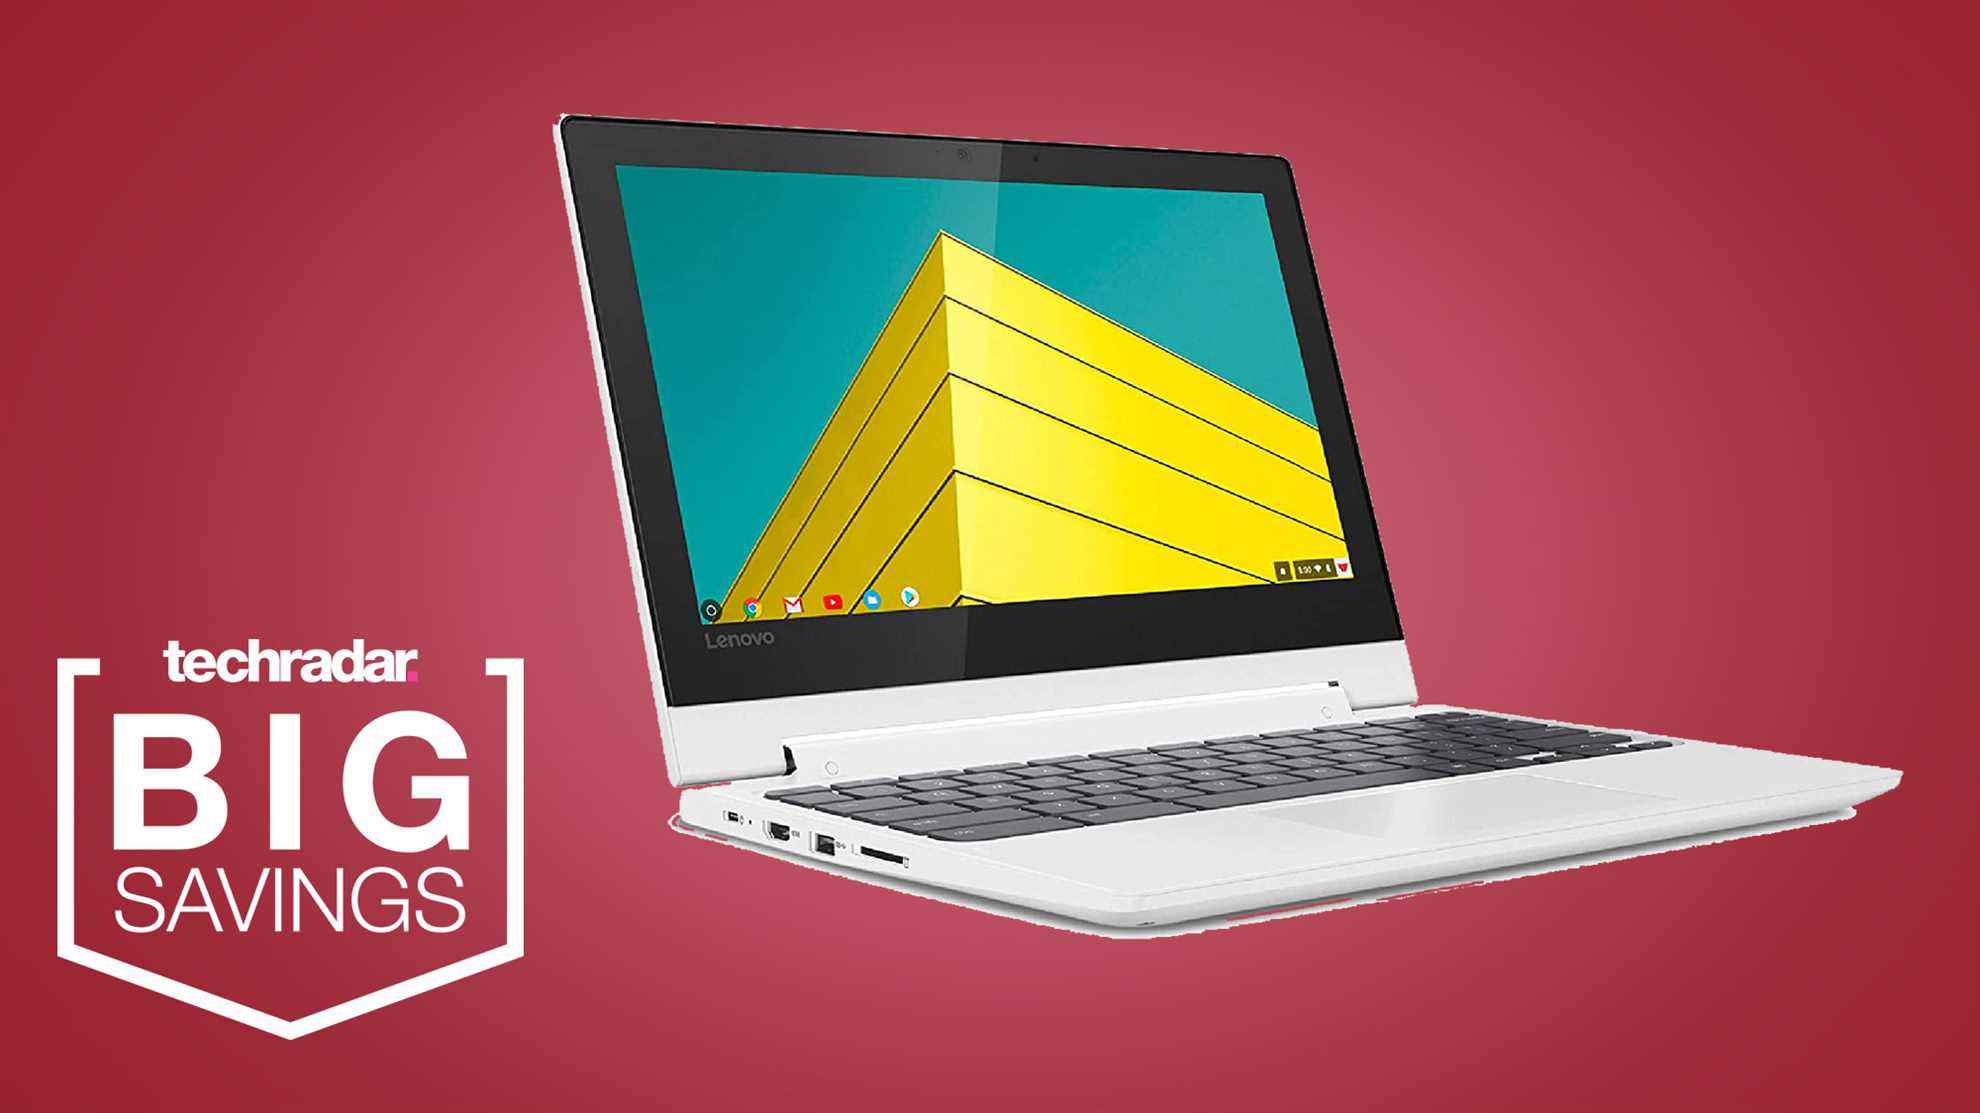 Chromebook Lenovo sur fond rouge avec lecture d'un badge TechRadar 